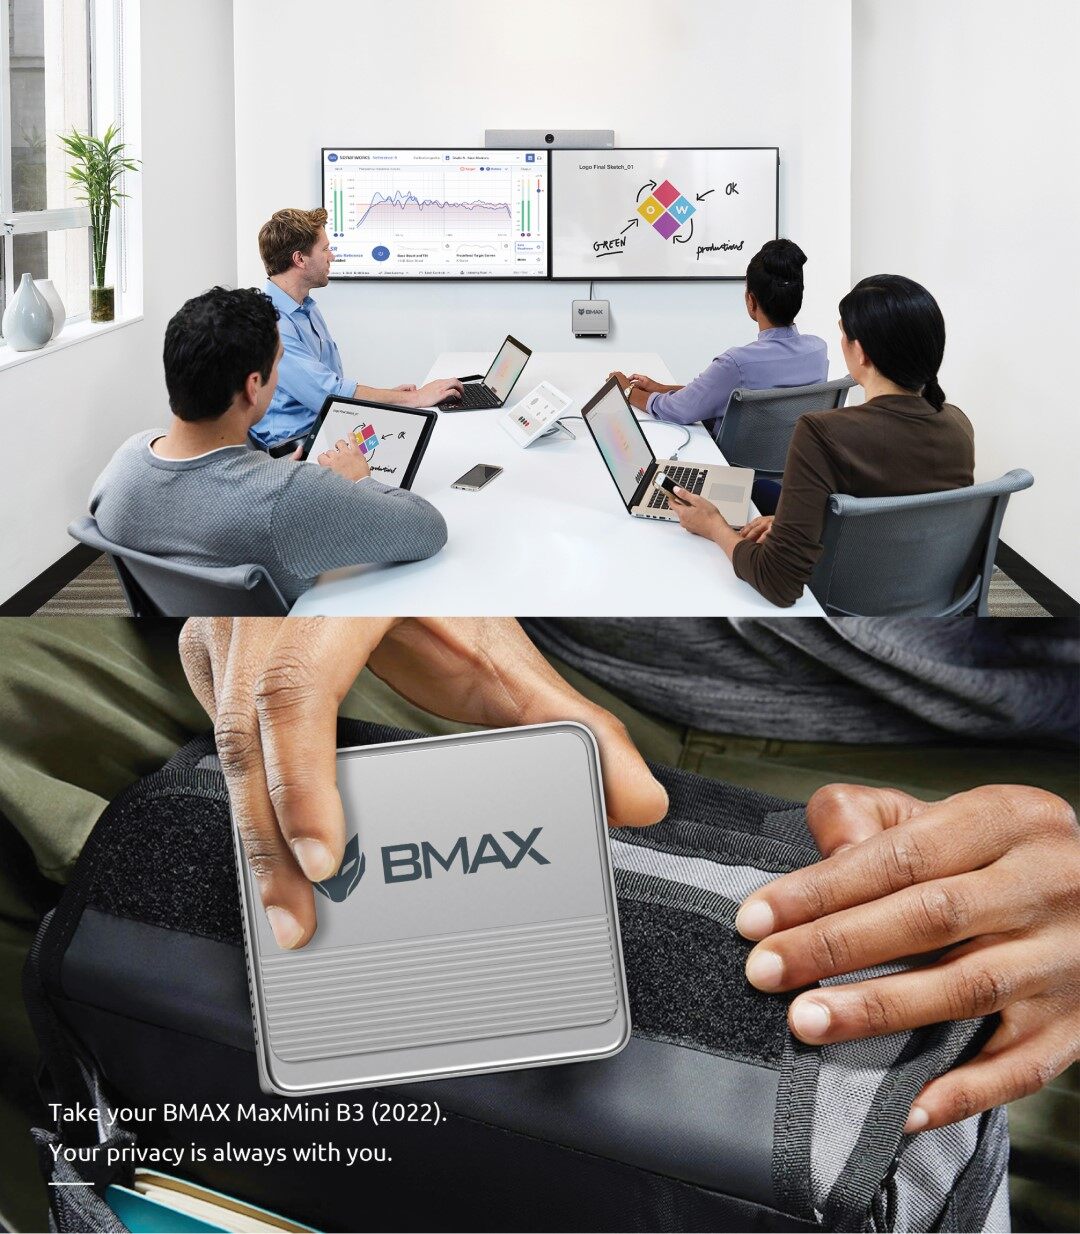 เกี่ยวกับสินค้า [ New! 2023 ]  BMAX B3 Mini PC Intel 11th Gen N5095 RAM 16GB + SSD 512GB Windows 11 พร้อมใช้งาน ประกัน 1 ปีในไทย